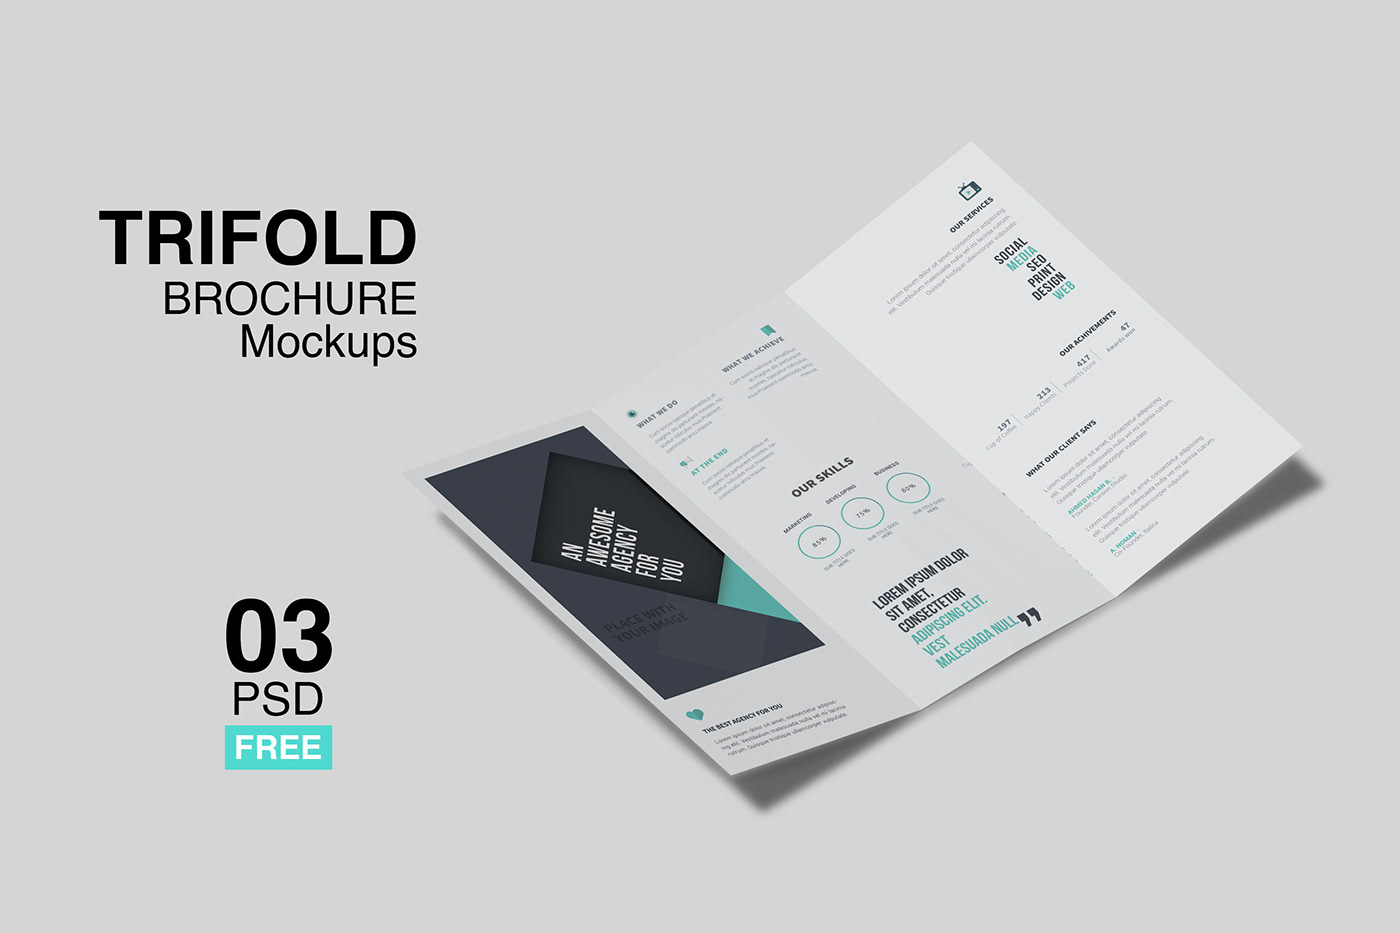 trifold mockup Mockup design mockup presentation design design editorial design  trifold brochures brochures graphic design  realistic mockup